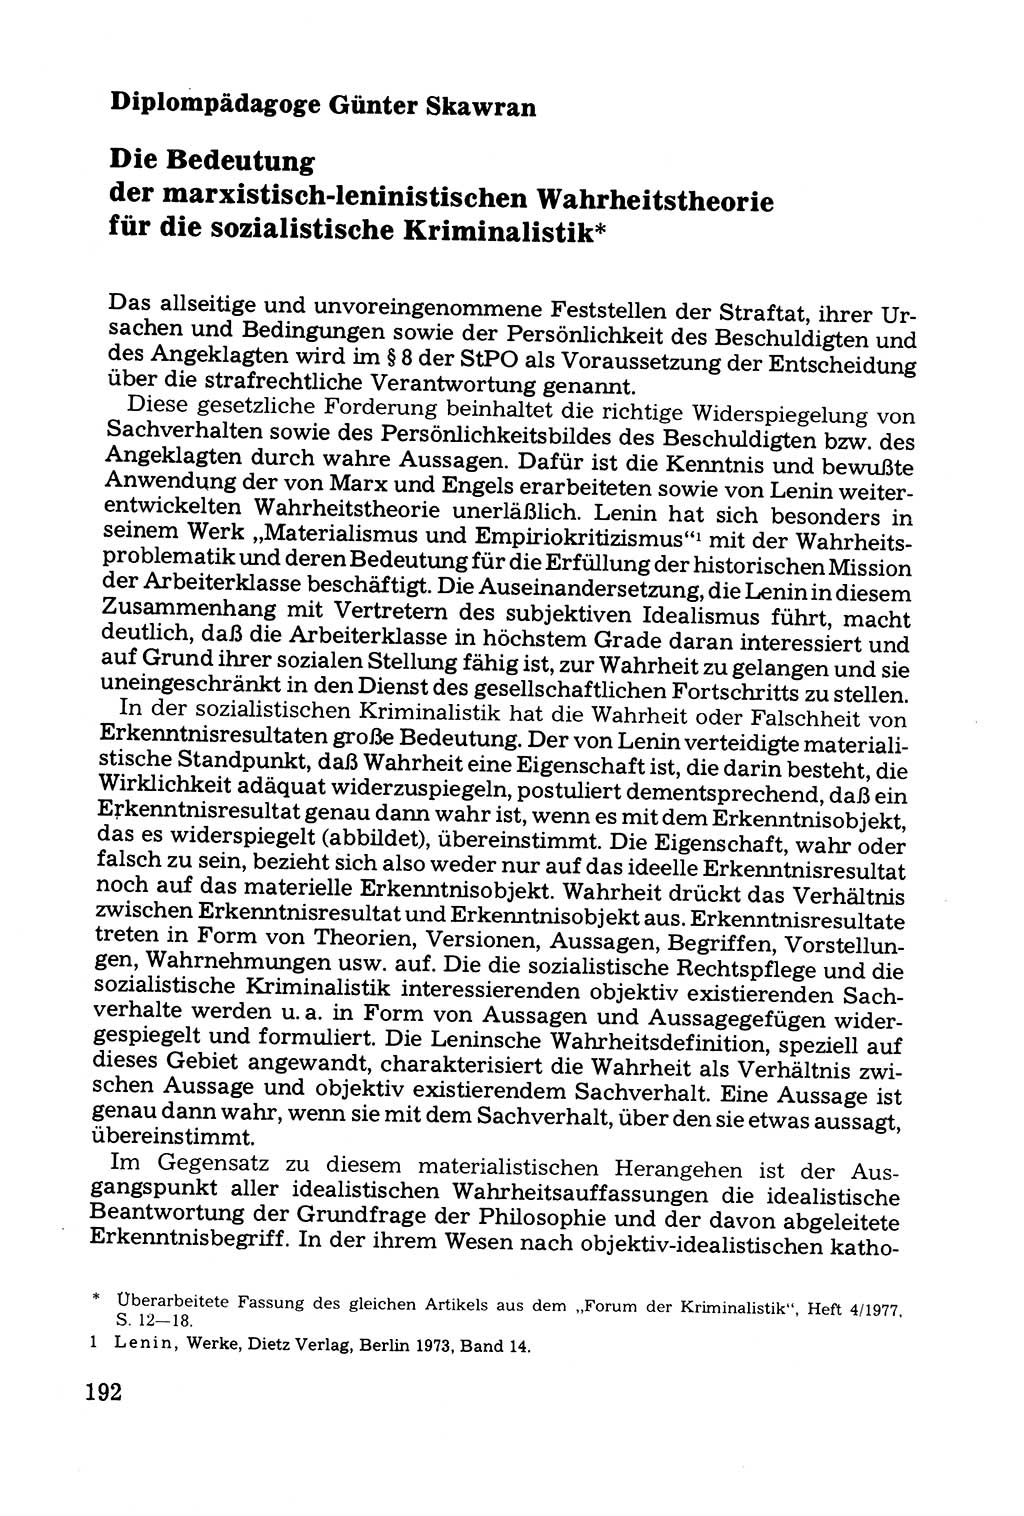 Grundfragen der Beweisführung im Ermittlungsverfahren [Deutsche Demokratische Republik (DDR)] 1980, Seite 192 (Bws.-Fhrg. EV DDR 1980, S. 192)